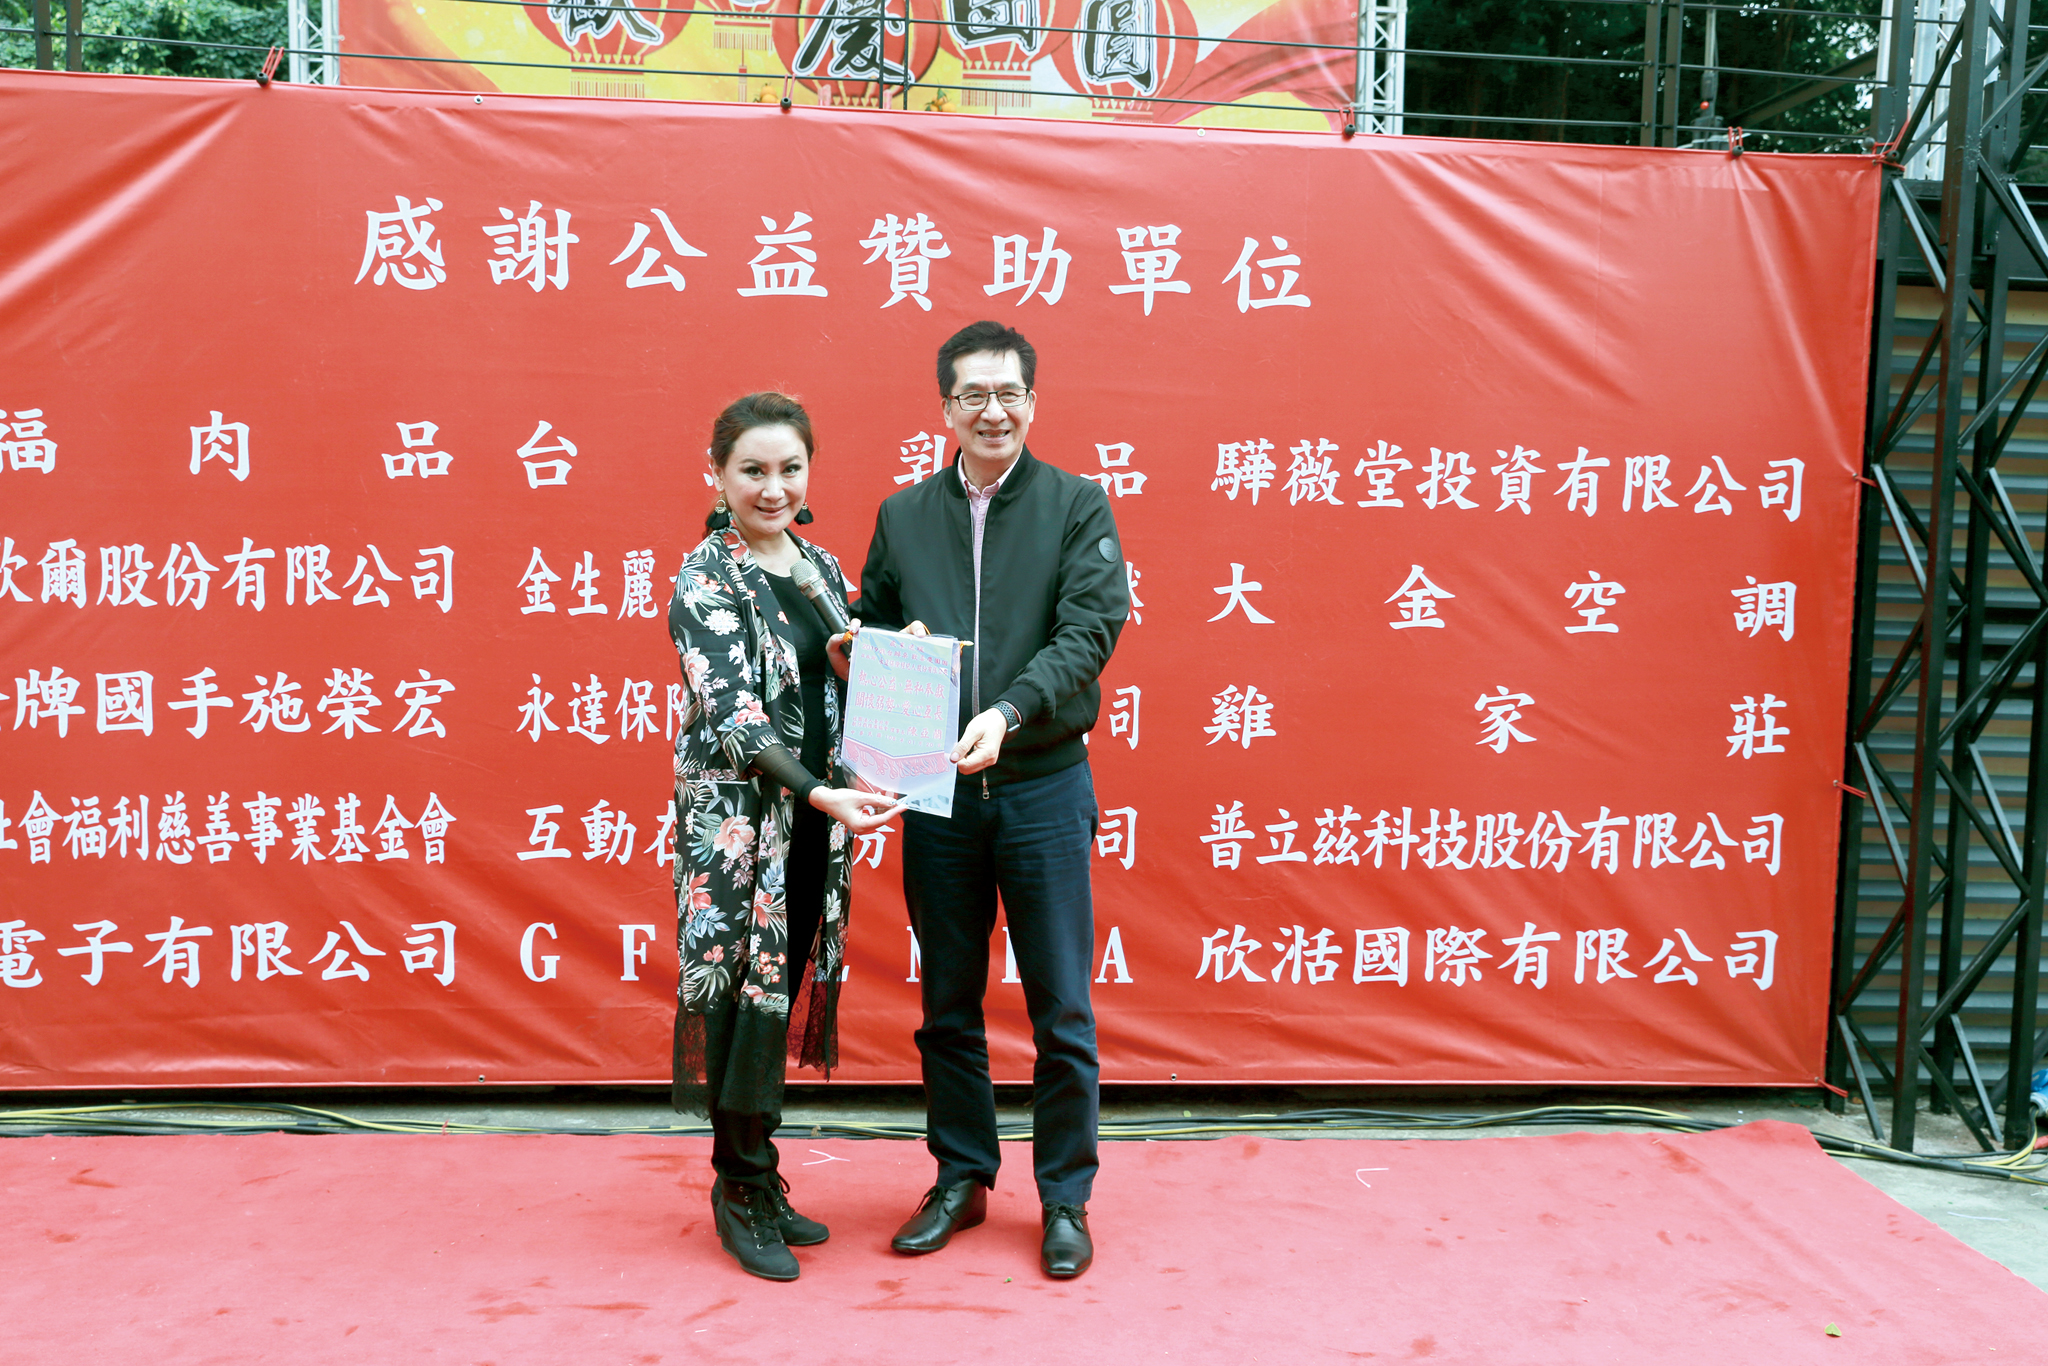 陳亞蘭(左)致贈感謝狀給永達陳慶鴻總經理(右)。